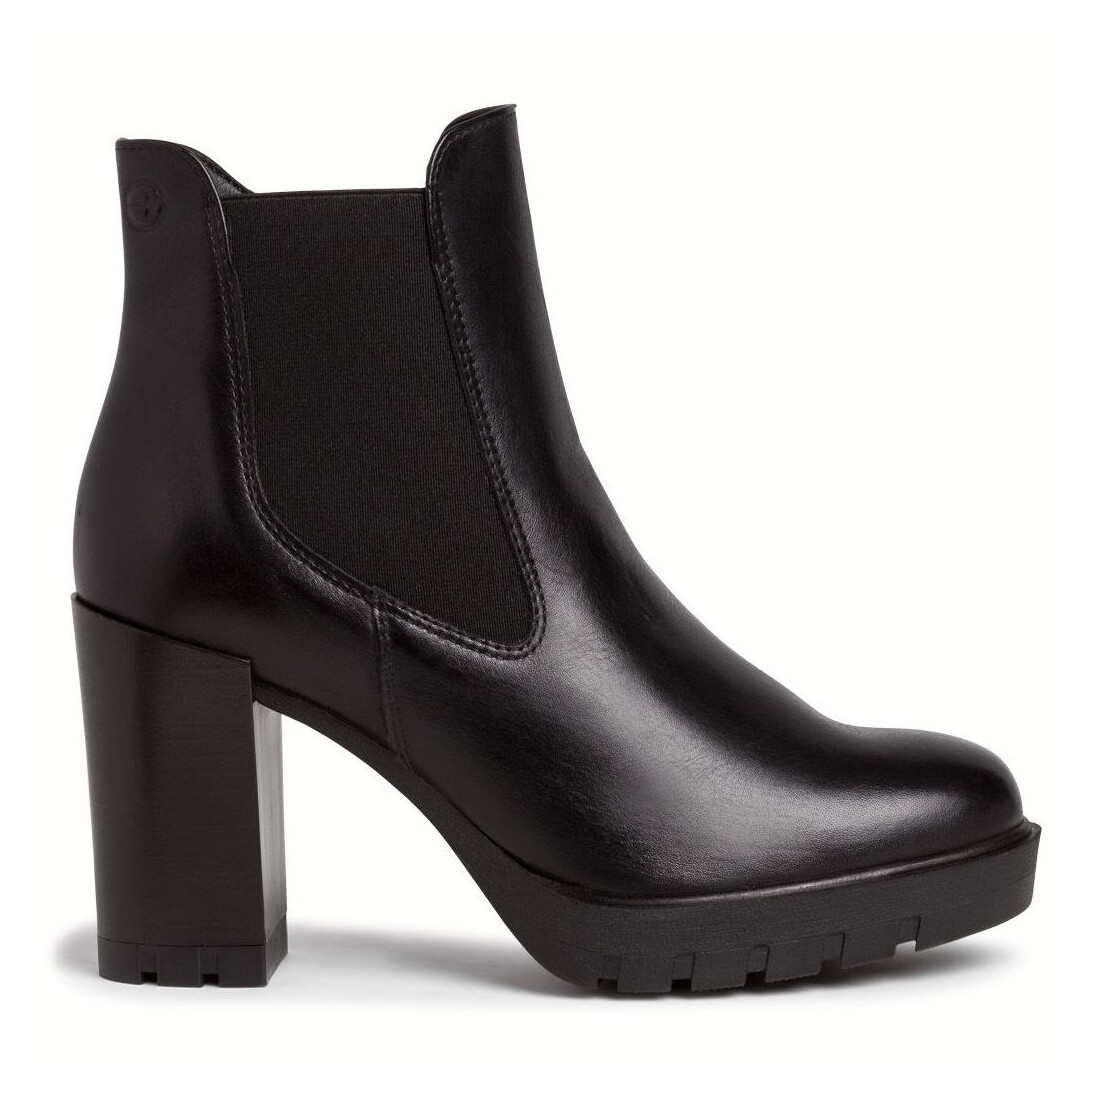 Black leather Tamaris heeled